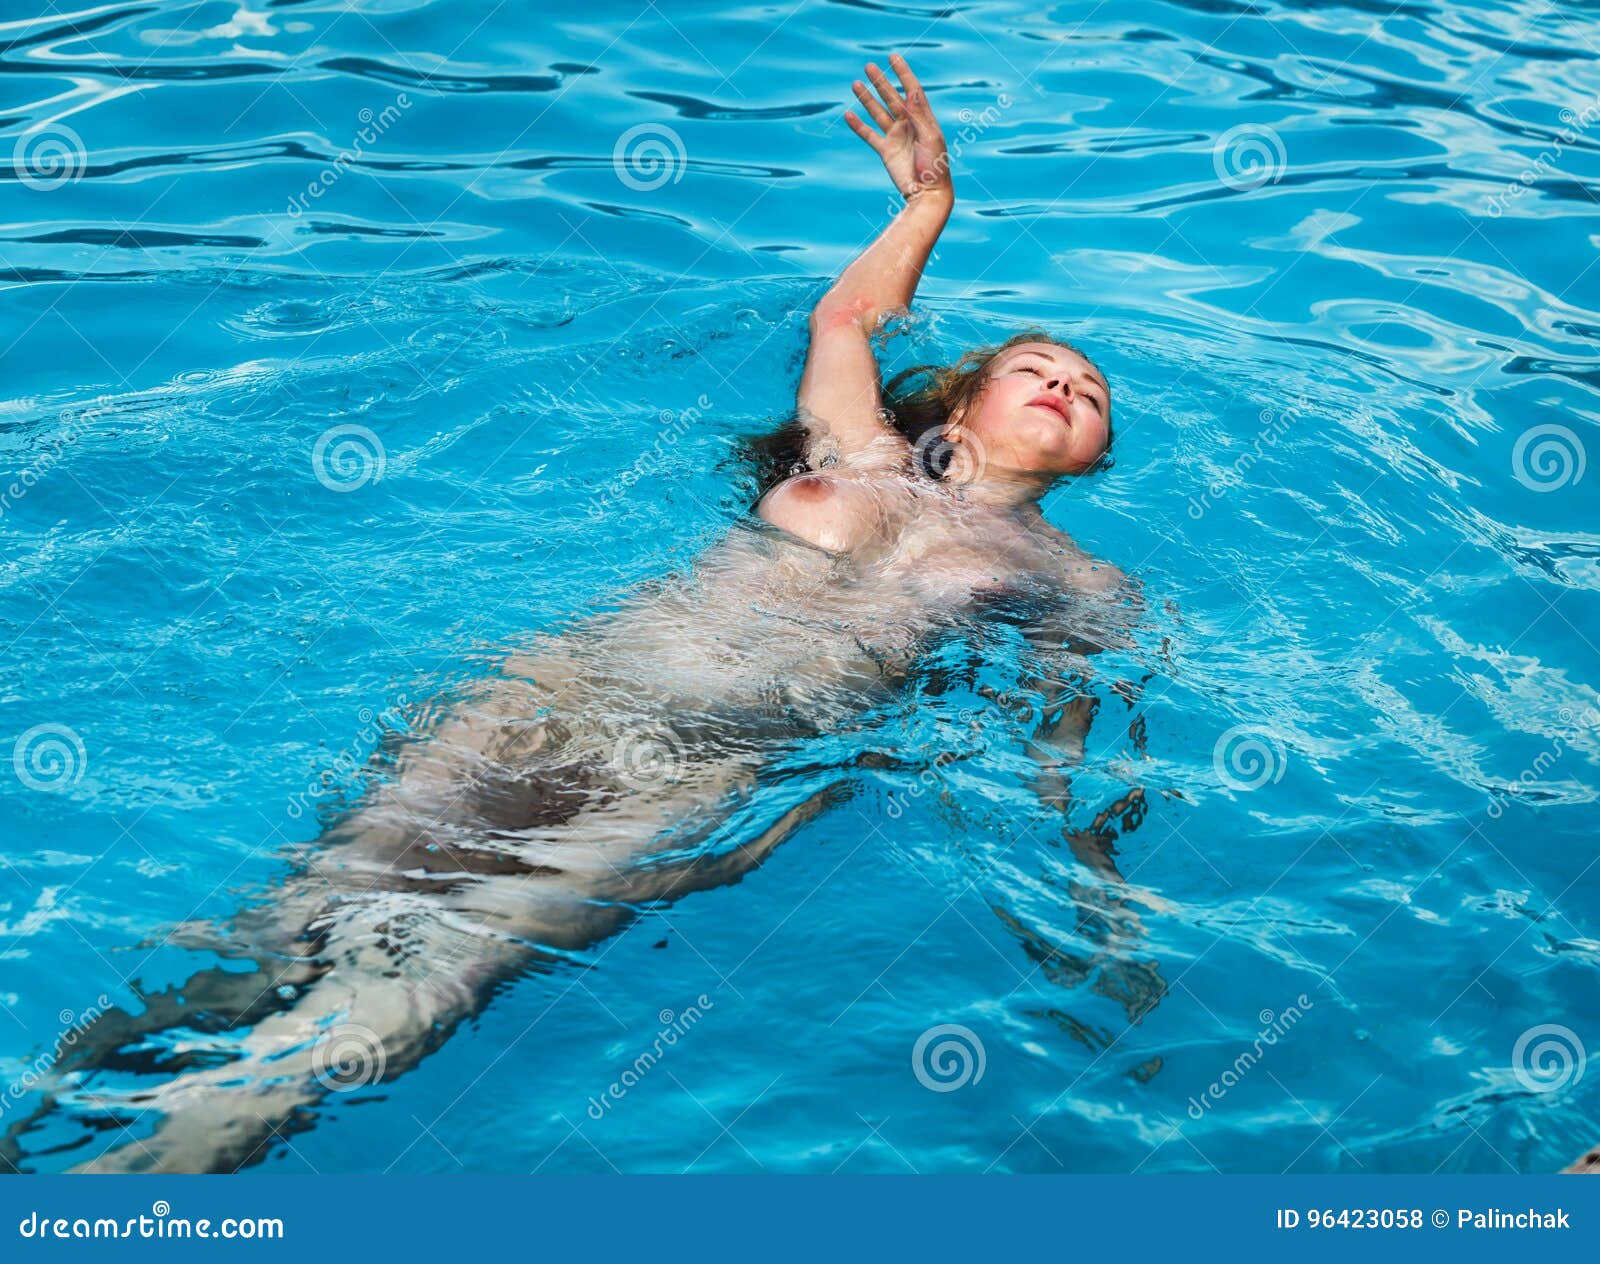 Nude woman swimming